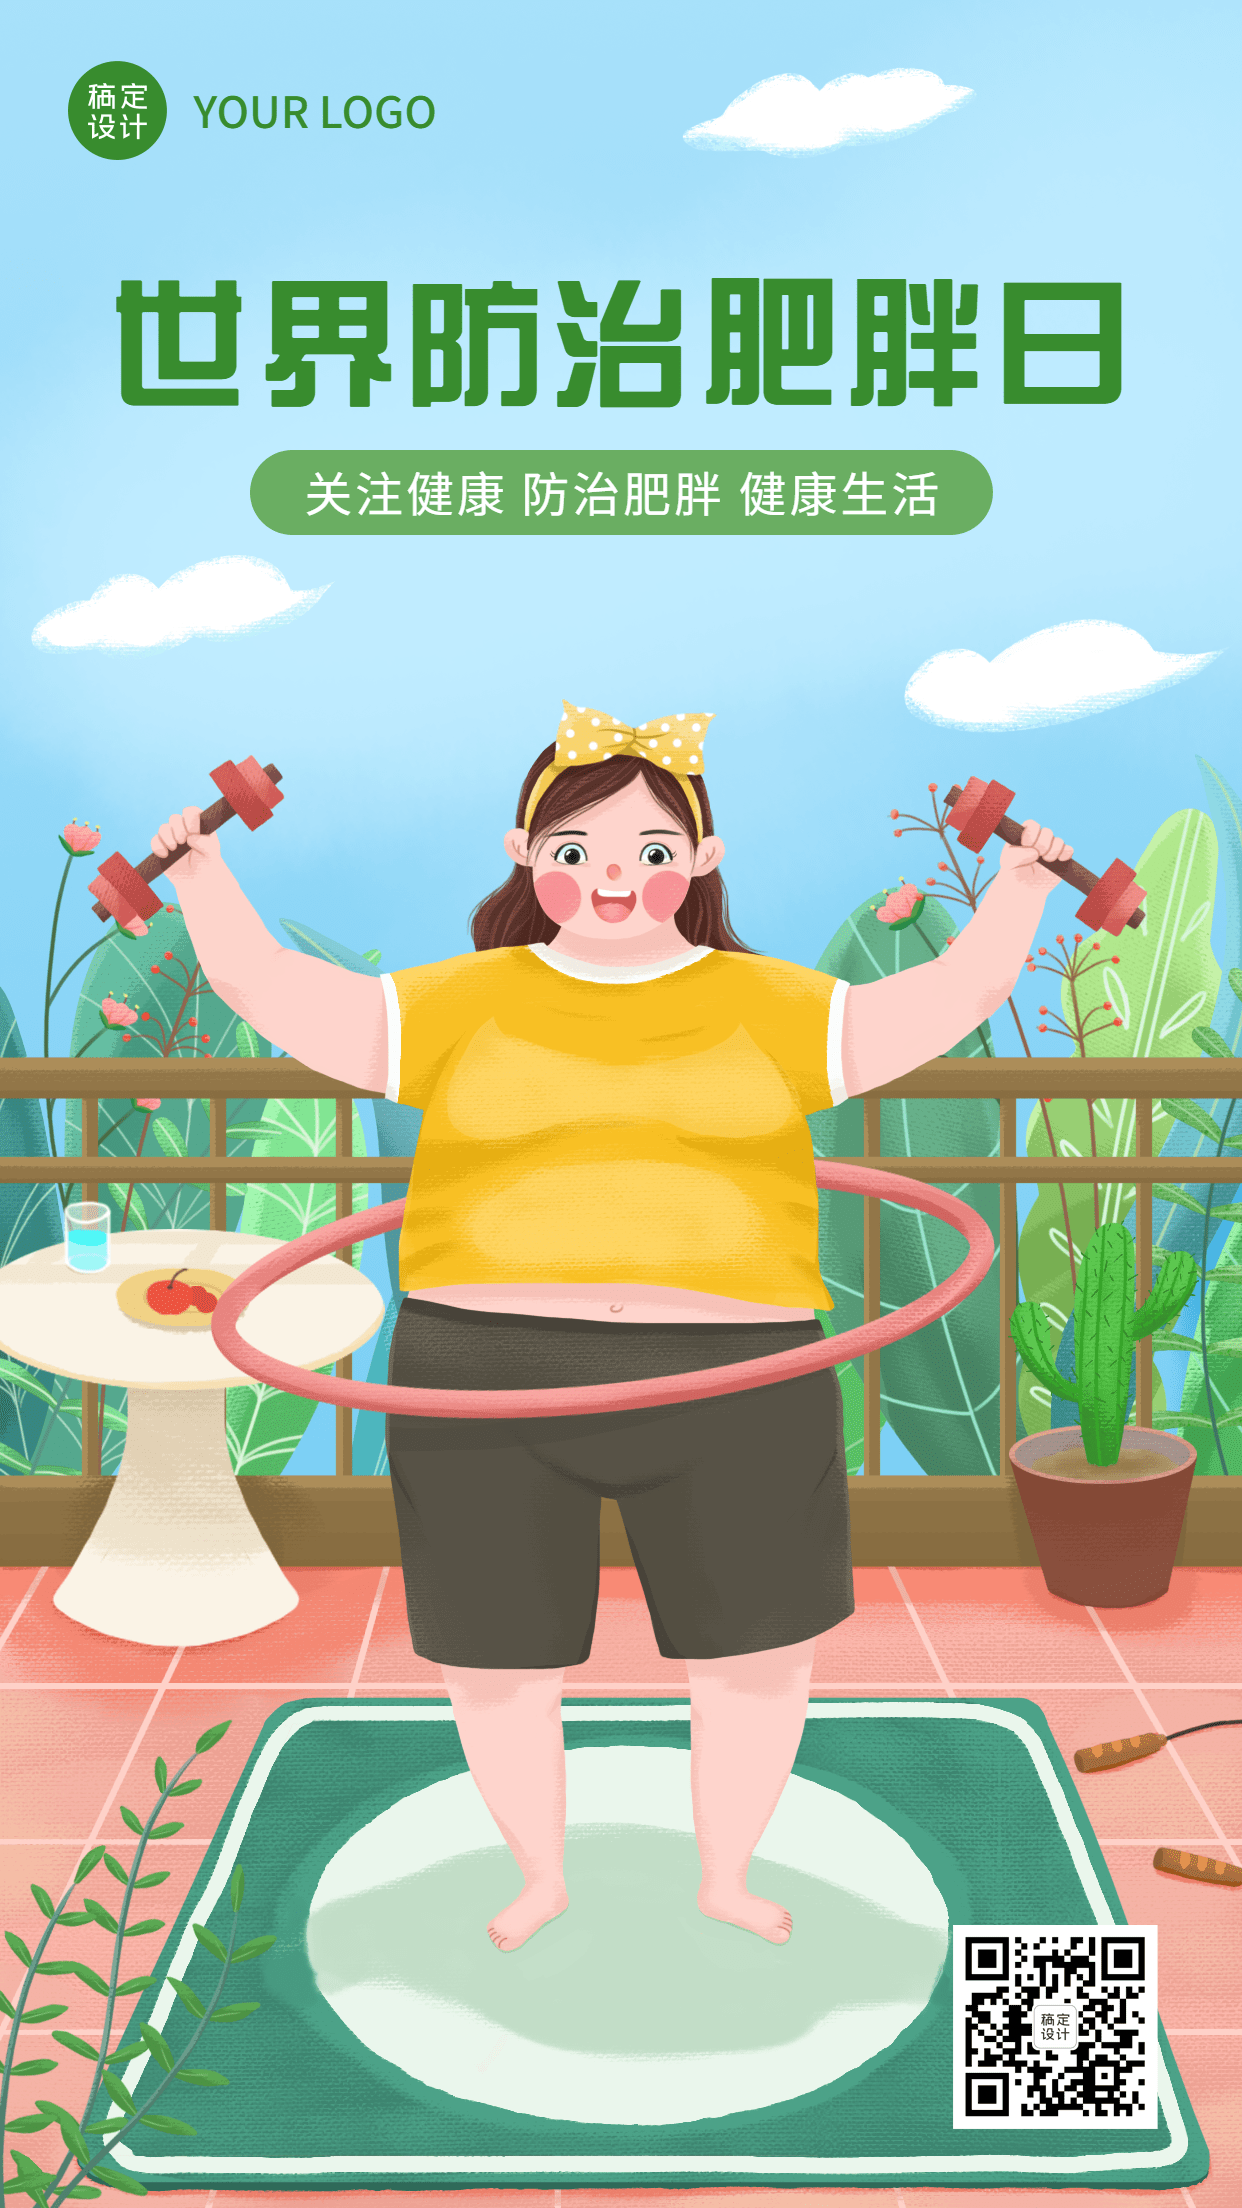 世界防治肥胖日节日宣传手机海报预览效果